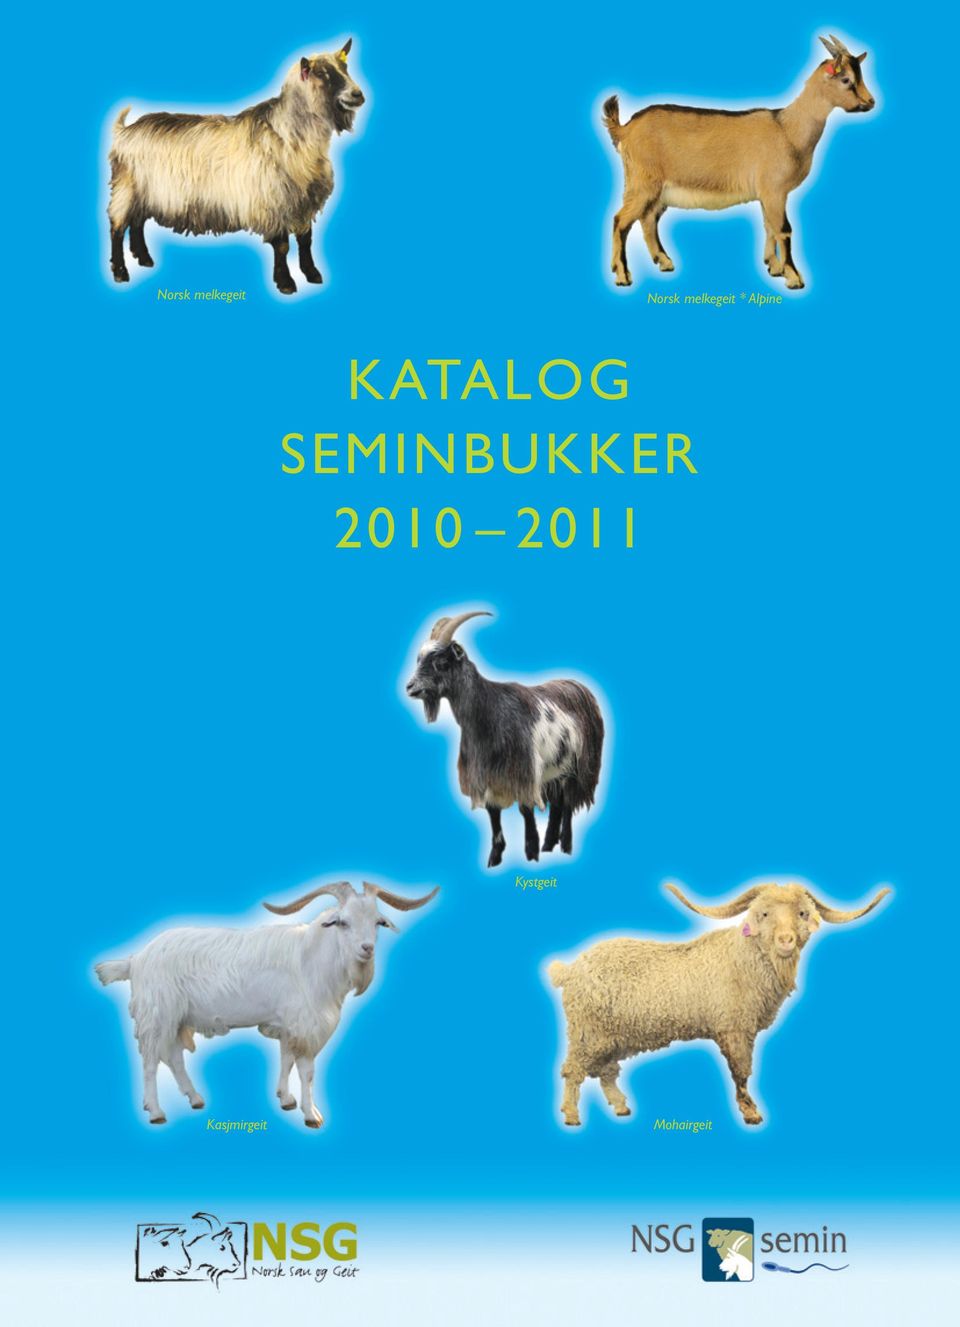 KATALOG SEMINBUKKER 2010